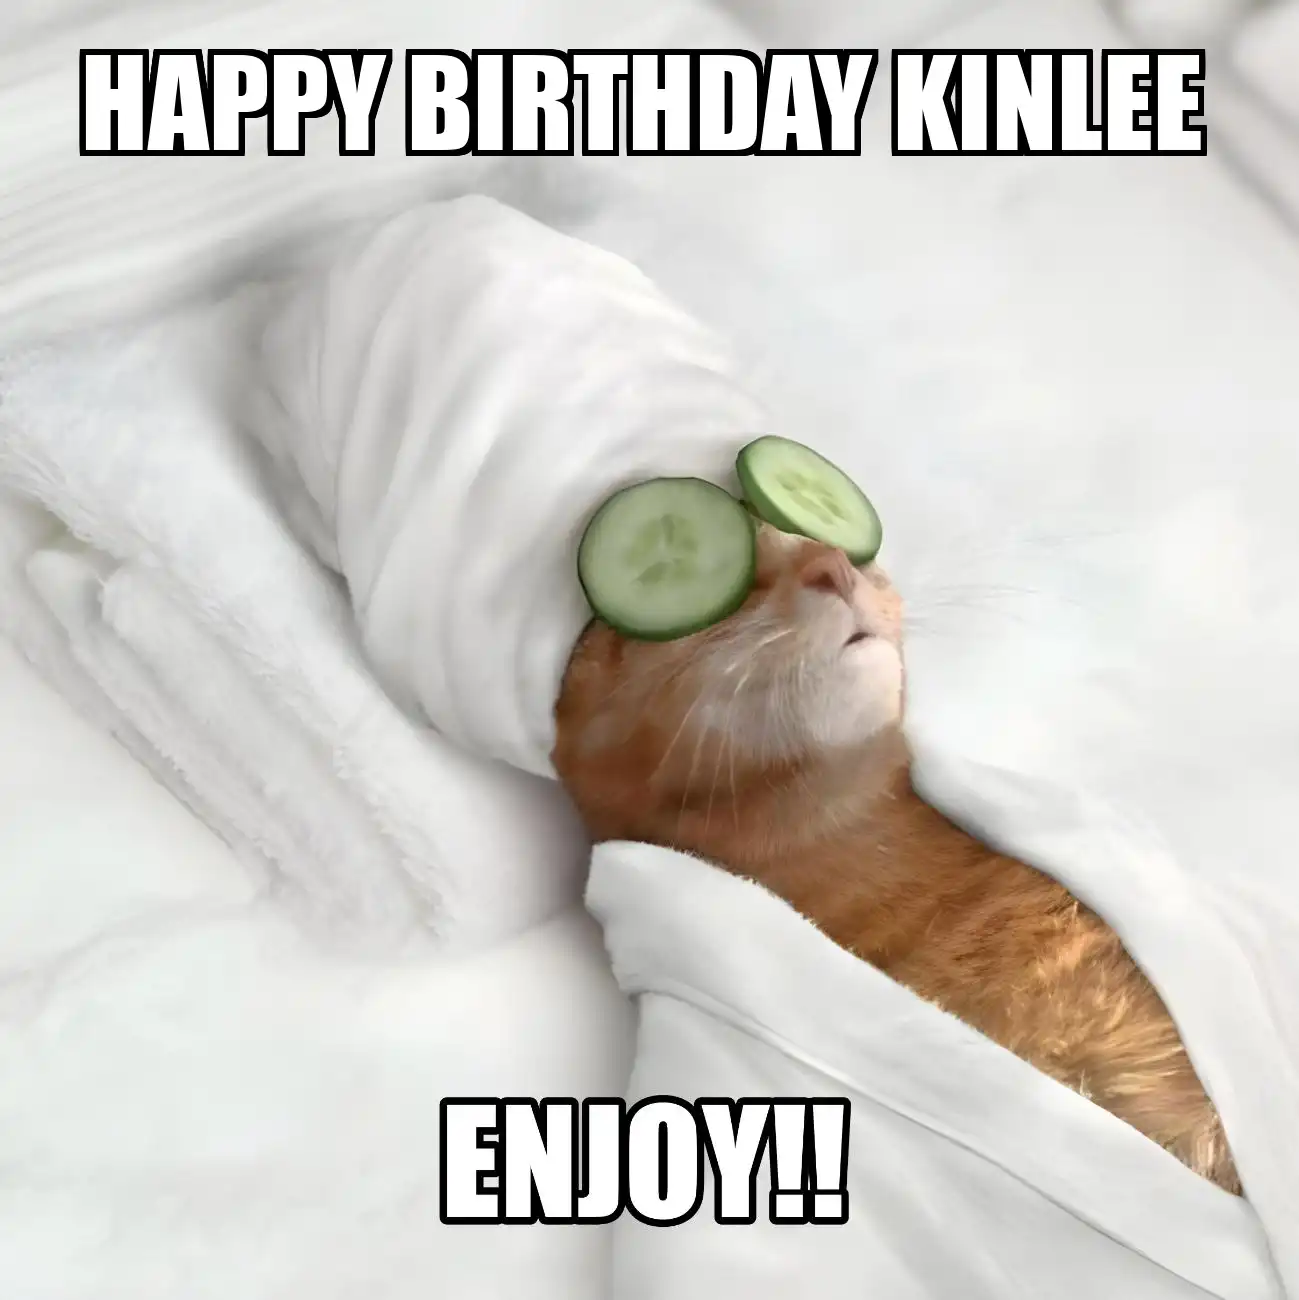 Happy Birthday Kinlee Enjoy Cat Meme